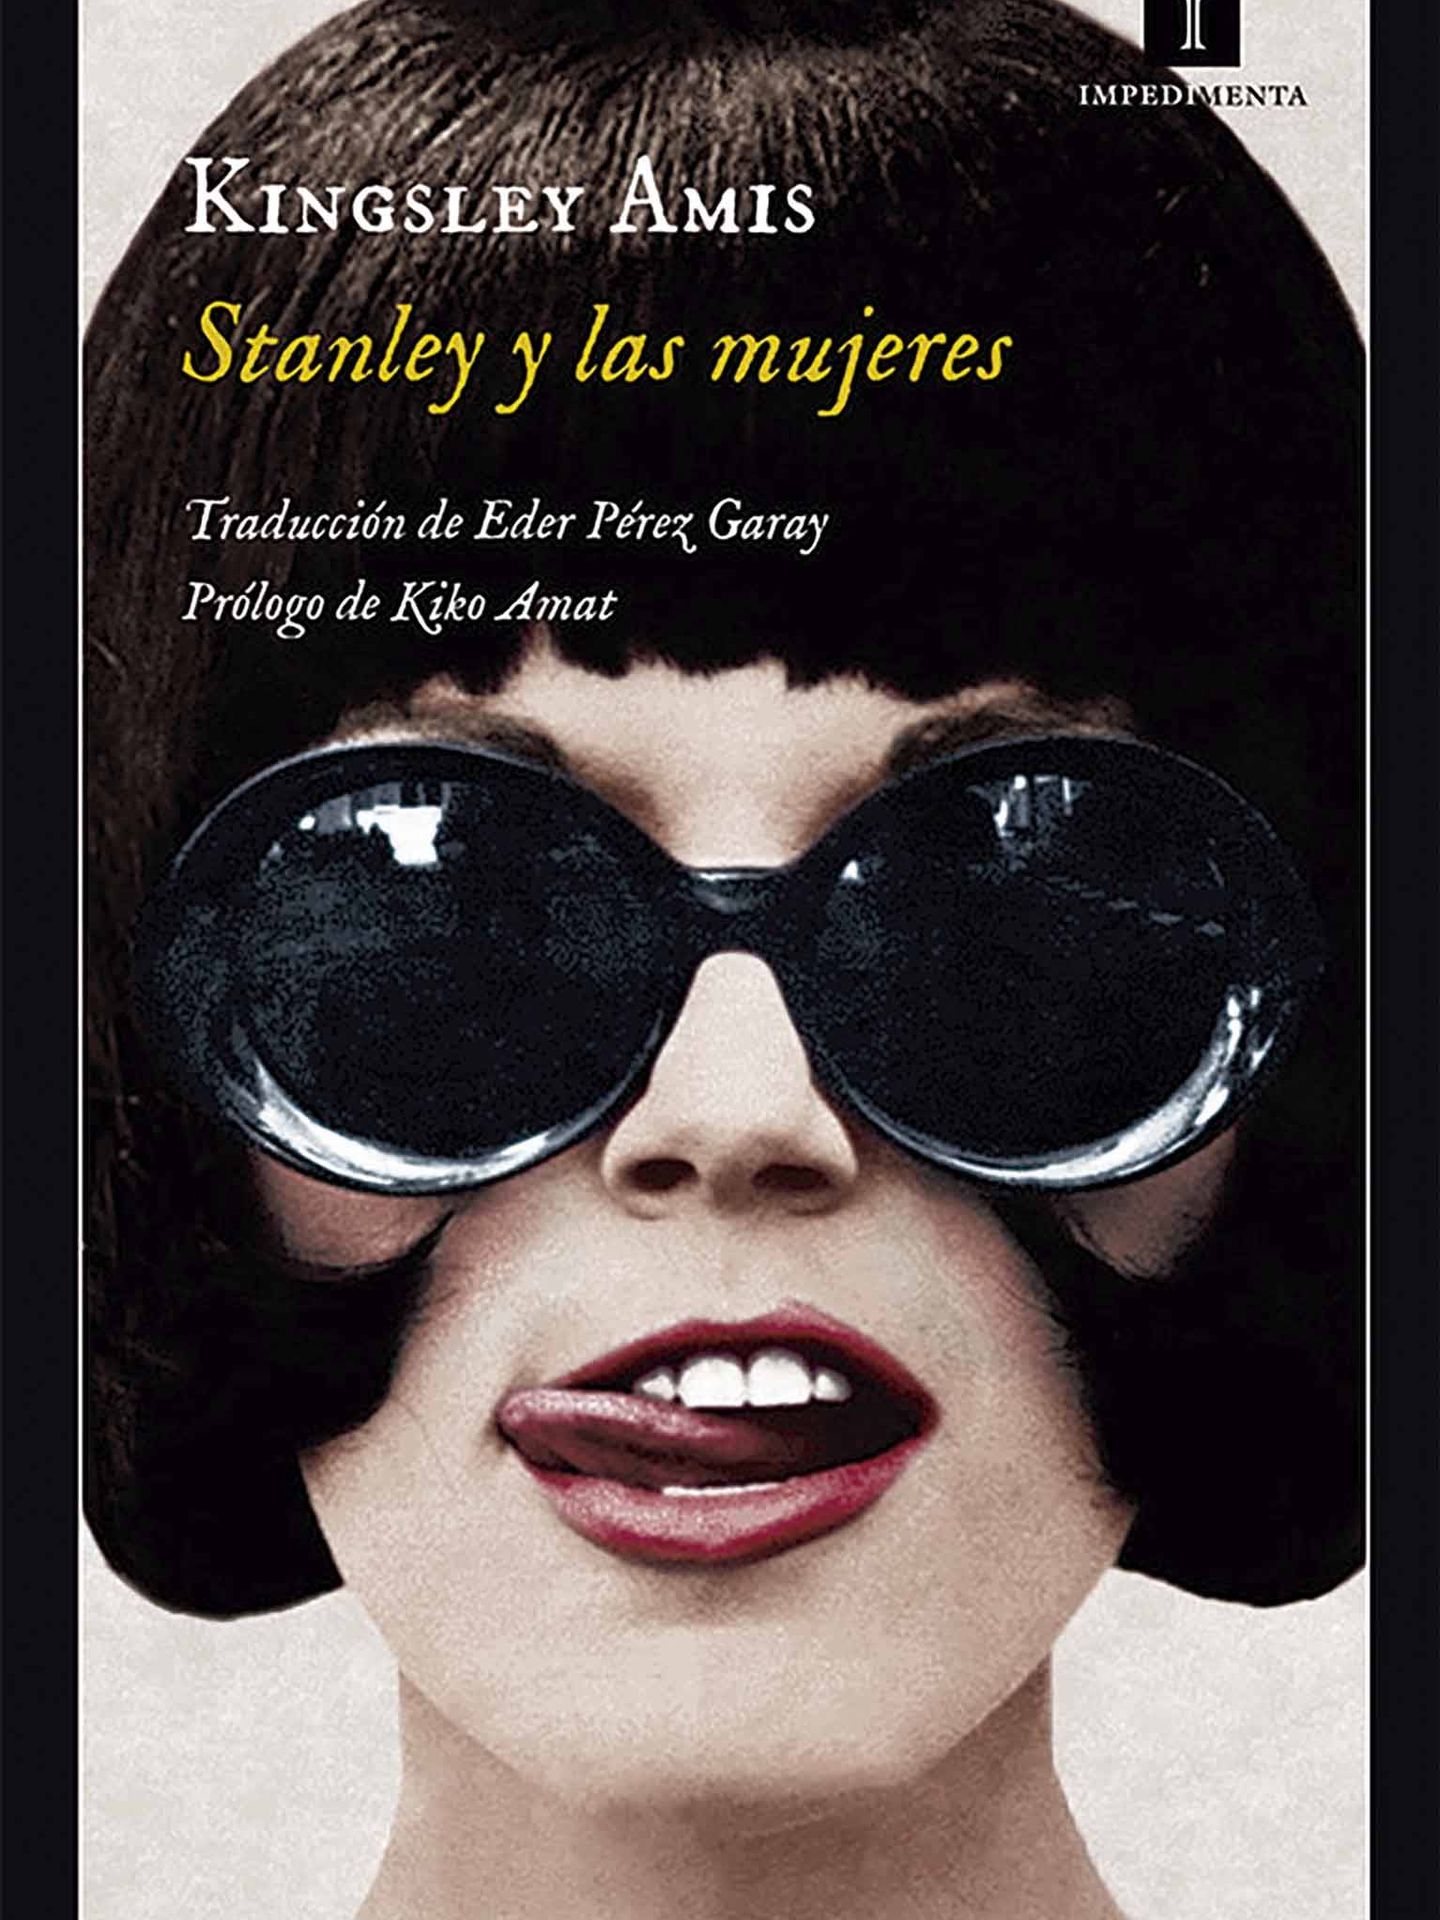 'Stanley y las mujeres'. (Impedimenta)